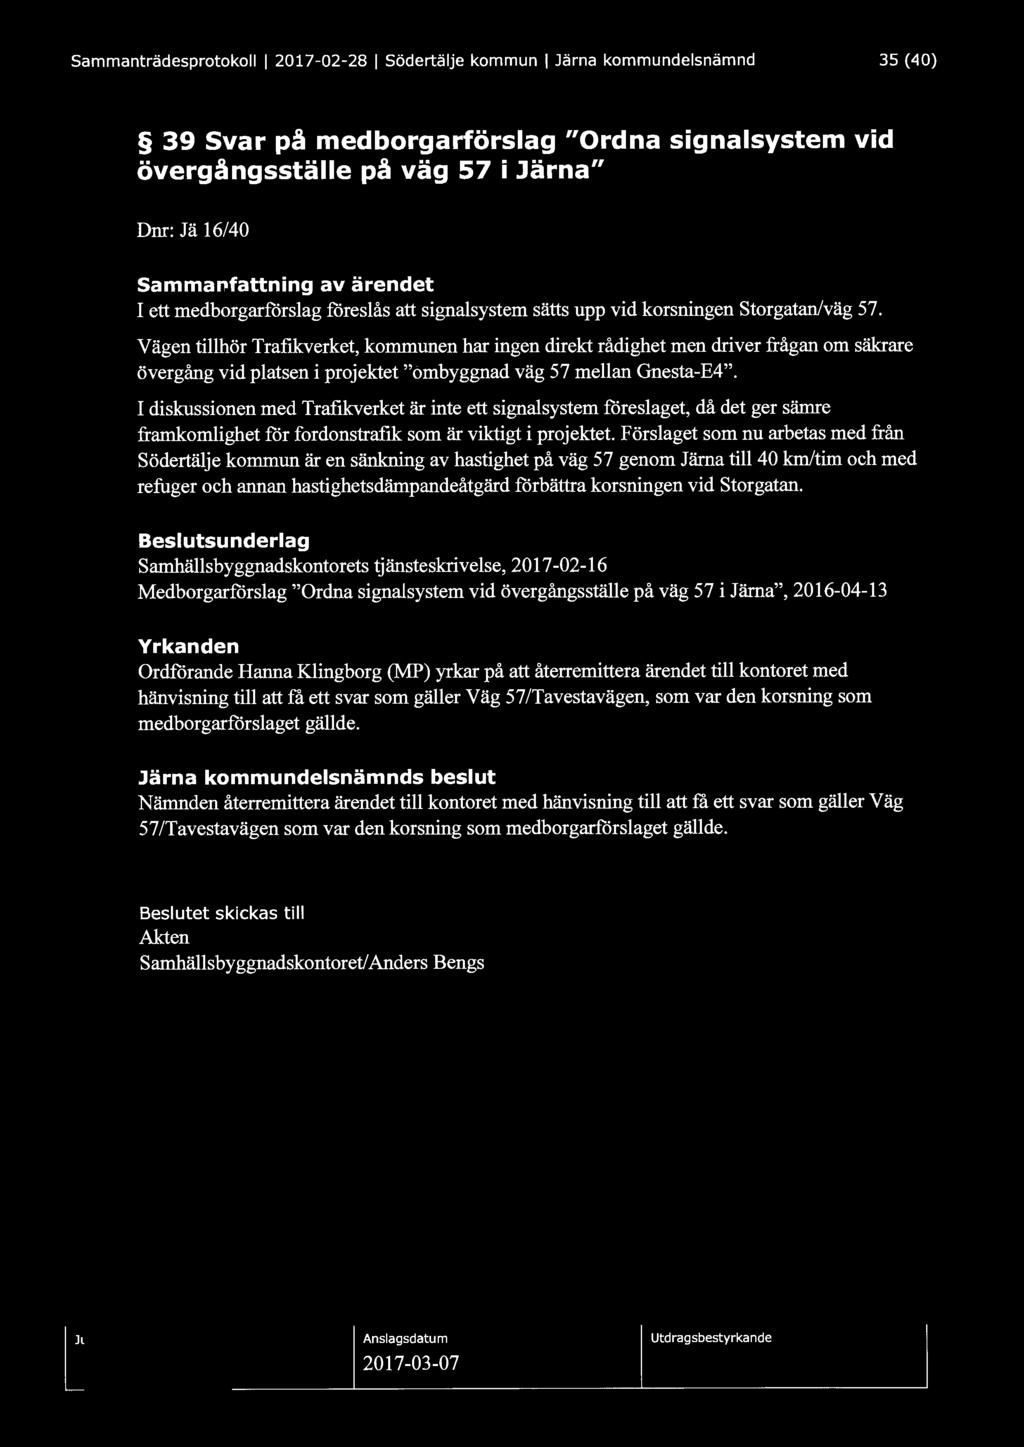 Sammanträdesprotokoll l 2017-02-28 l Södertälje kommun l Järna kommundelsnämnd 35 (40) 39 Svar på medborgarförslag "Ordna signalsystem vid övergångsställe på väg 57 i Järna" Dnr: Jä 16/40